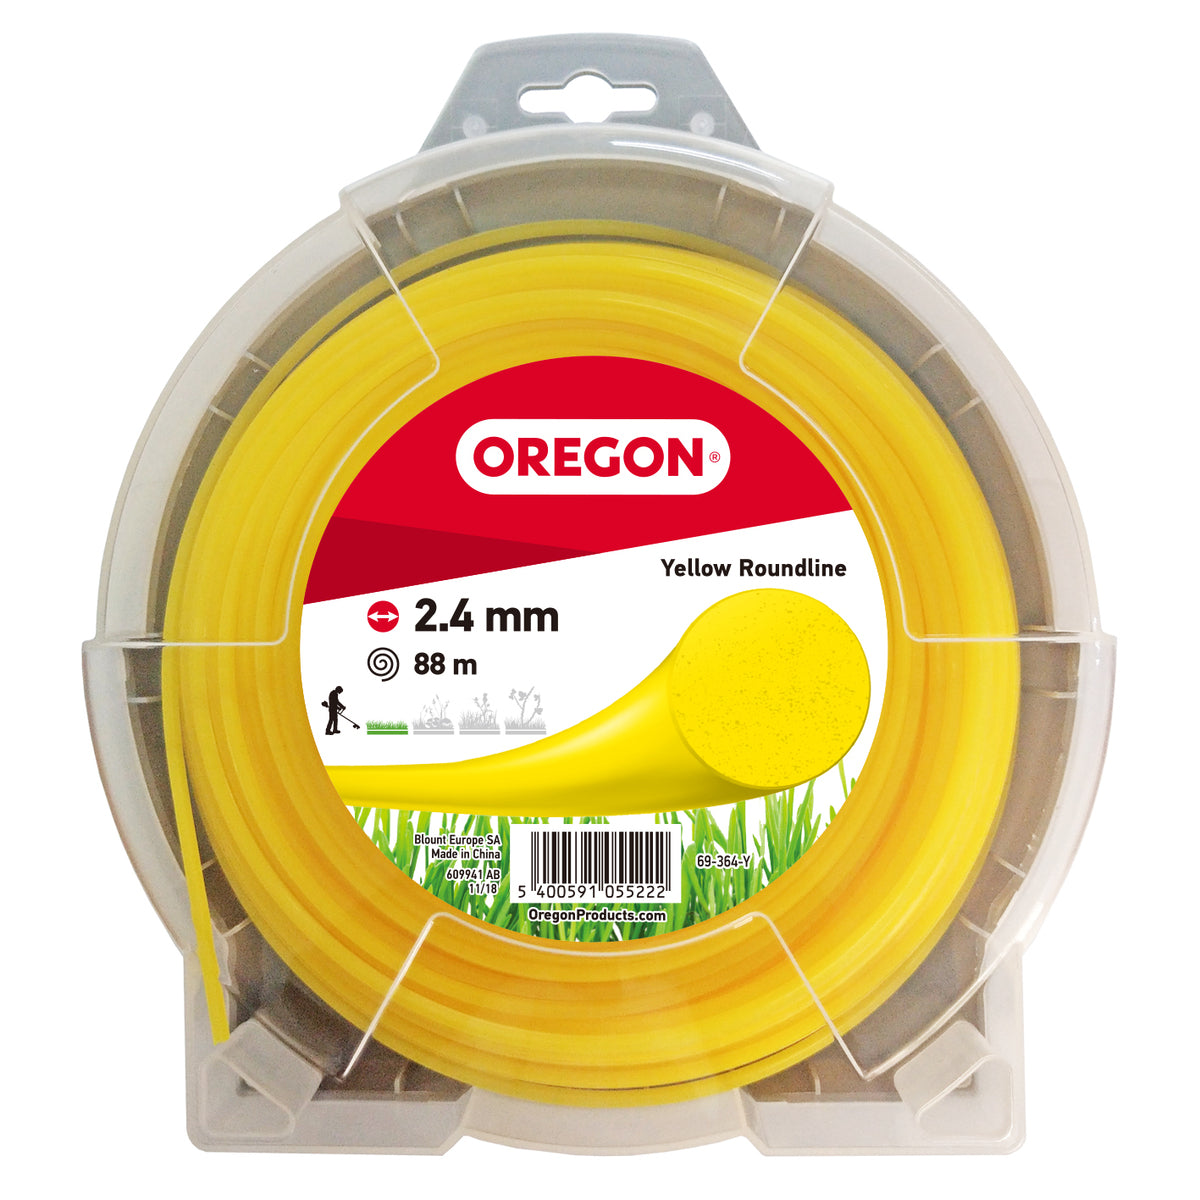 Oregon 69-364-Y Yellow Round Strimmer Line, 2.4mm, 88m Donut